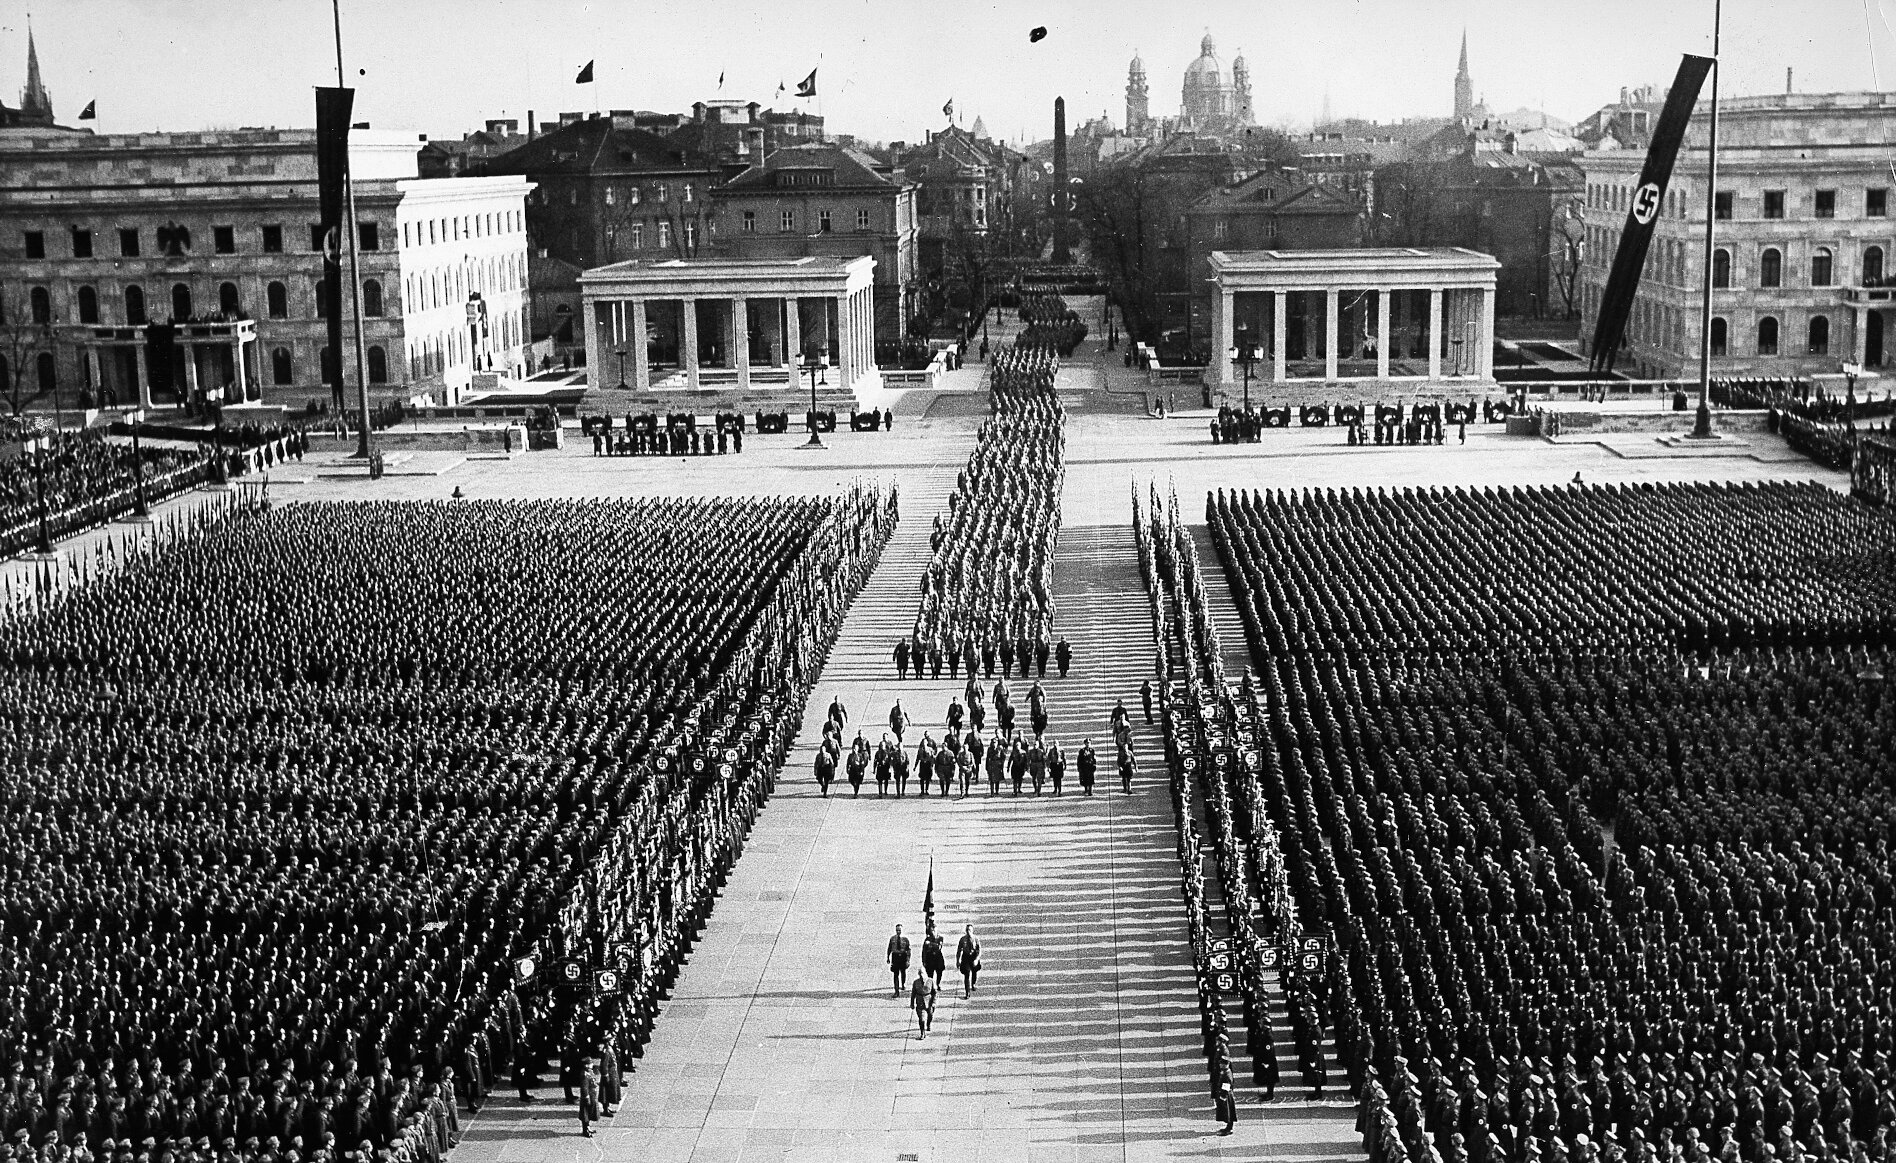 [Translate to English:] Entouré de centaines d'uniformes, un cortège funèbre mené par des porte-drapeaux chemine vers le centre de la Königsplatz, décorée de drapeaux à croix gammée.